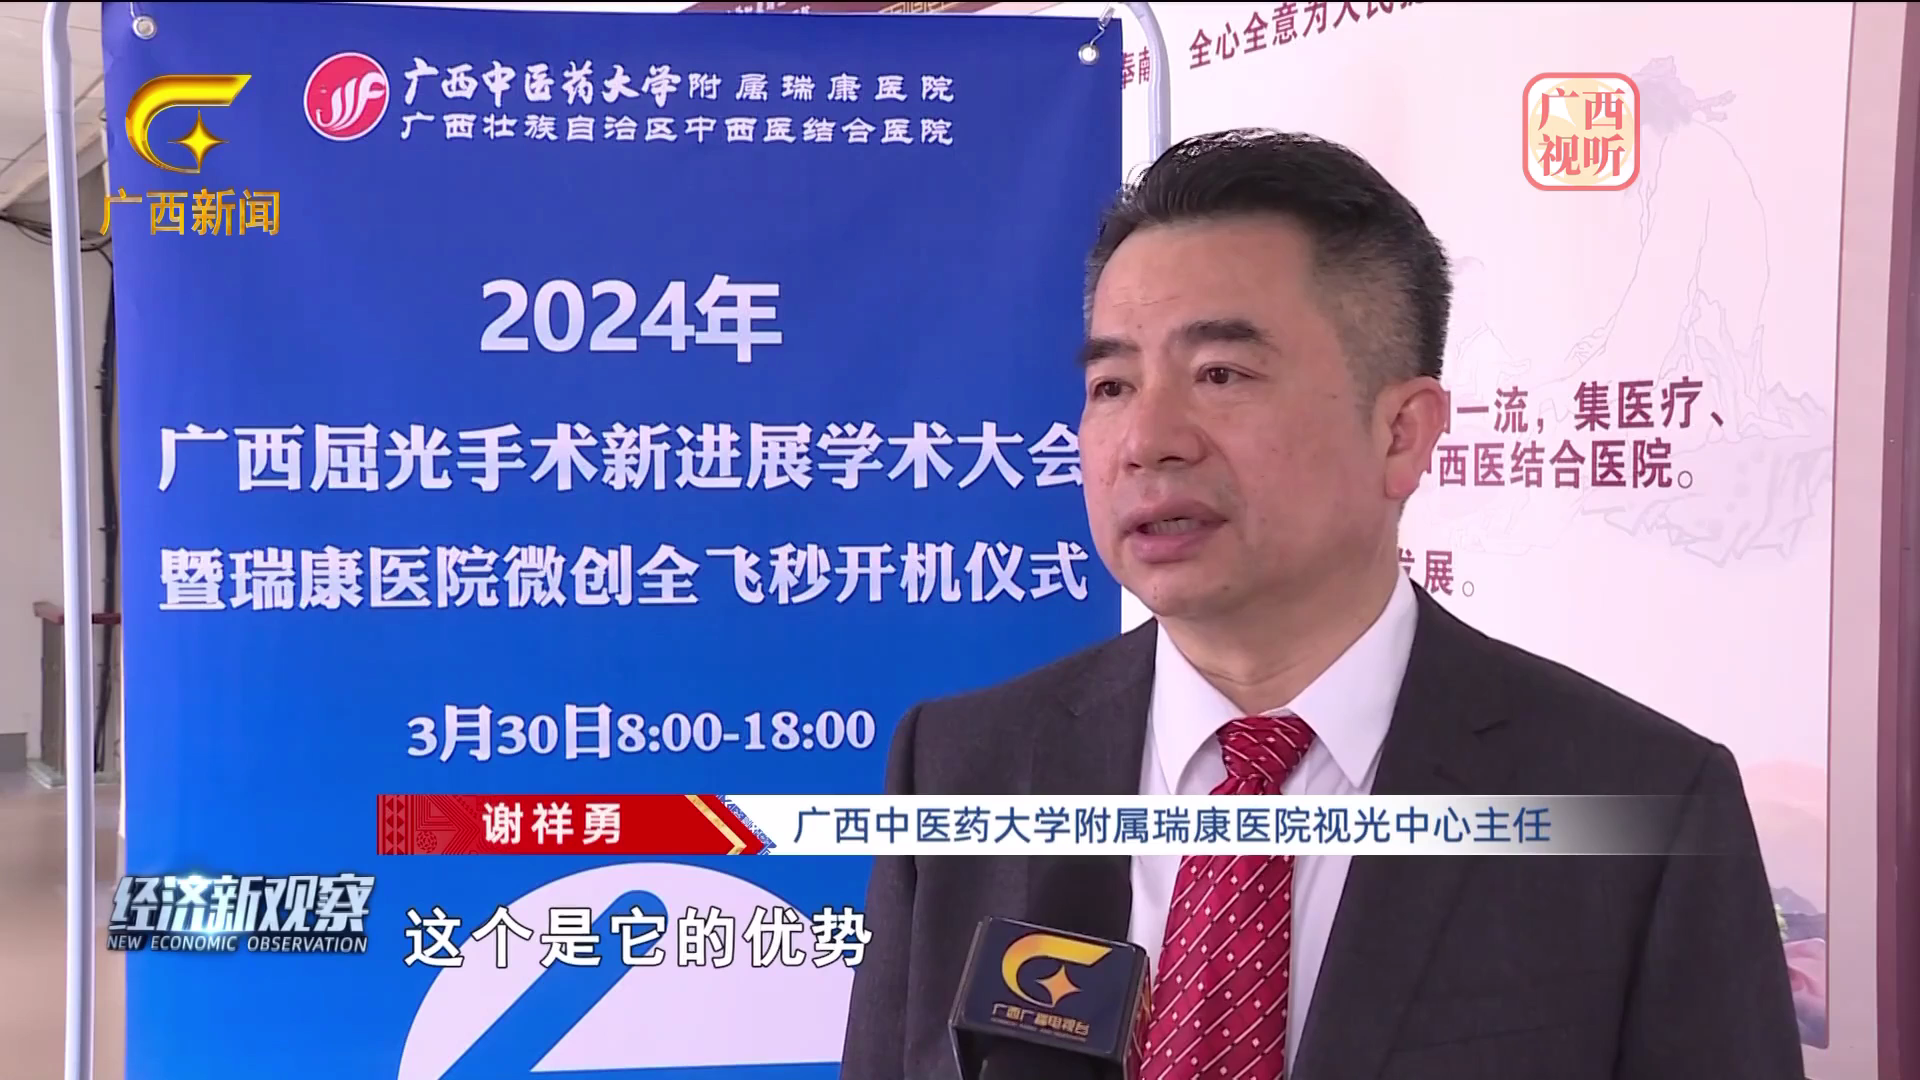 【经济新观察】2024年广西屈光手术新进展学术大会在南宁举行